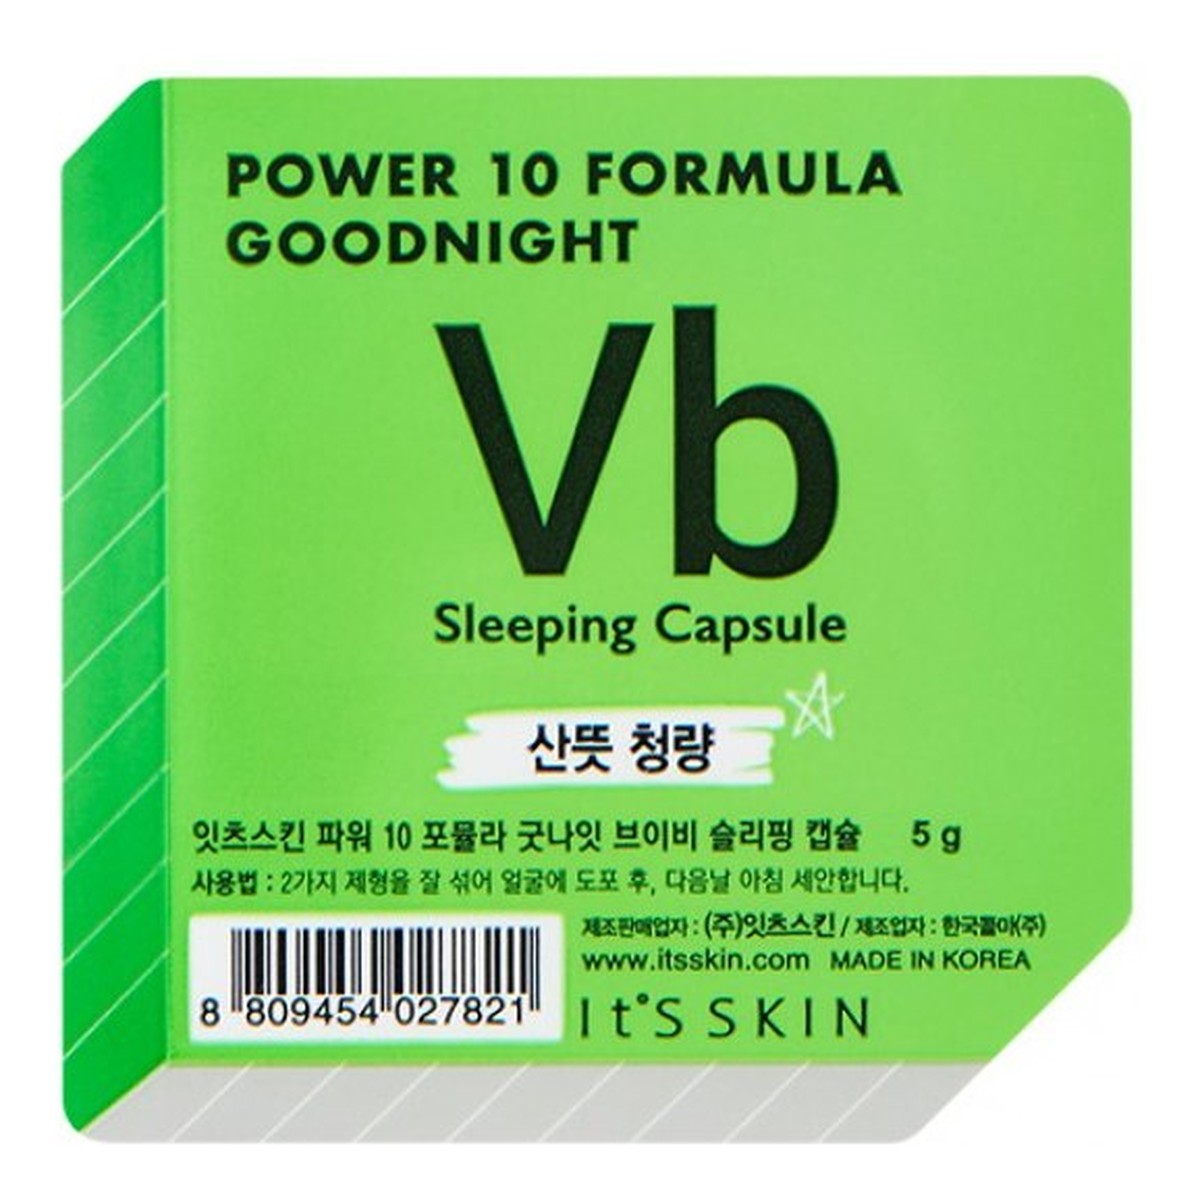 It's Skin Power 10 Formula Vb Good Night Sleeping Regulująca dwufazowa maseczka całonocna w kapsułce 5g